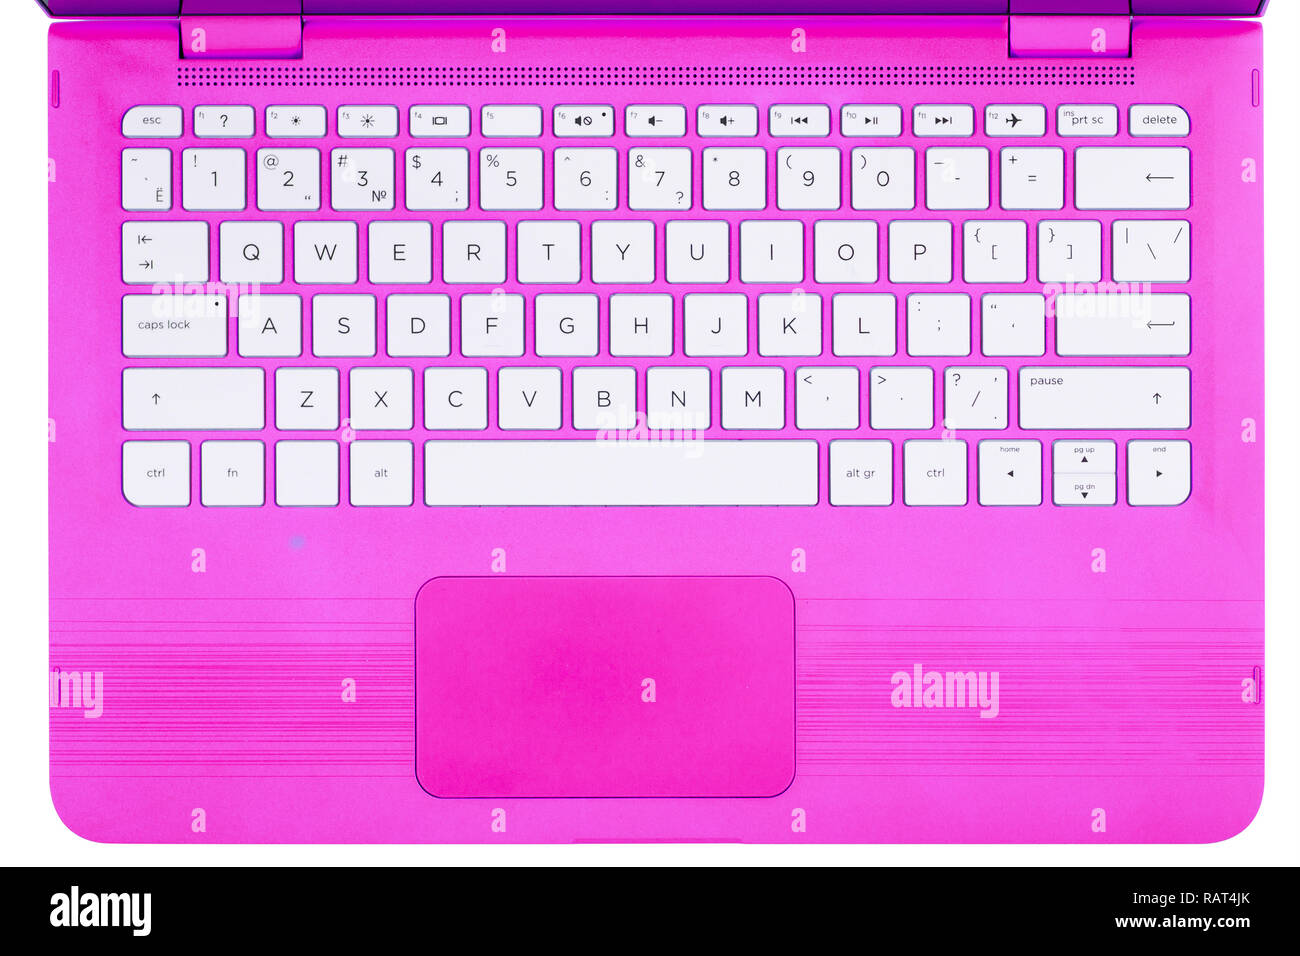 Розовый экран ноутбука. Клавиатура ноутбука. Розовая клавиатура на ноутбук. Распечатка клавиатуры ноутбука. Клавиатура для ноутбука для девочек.